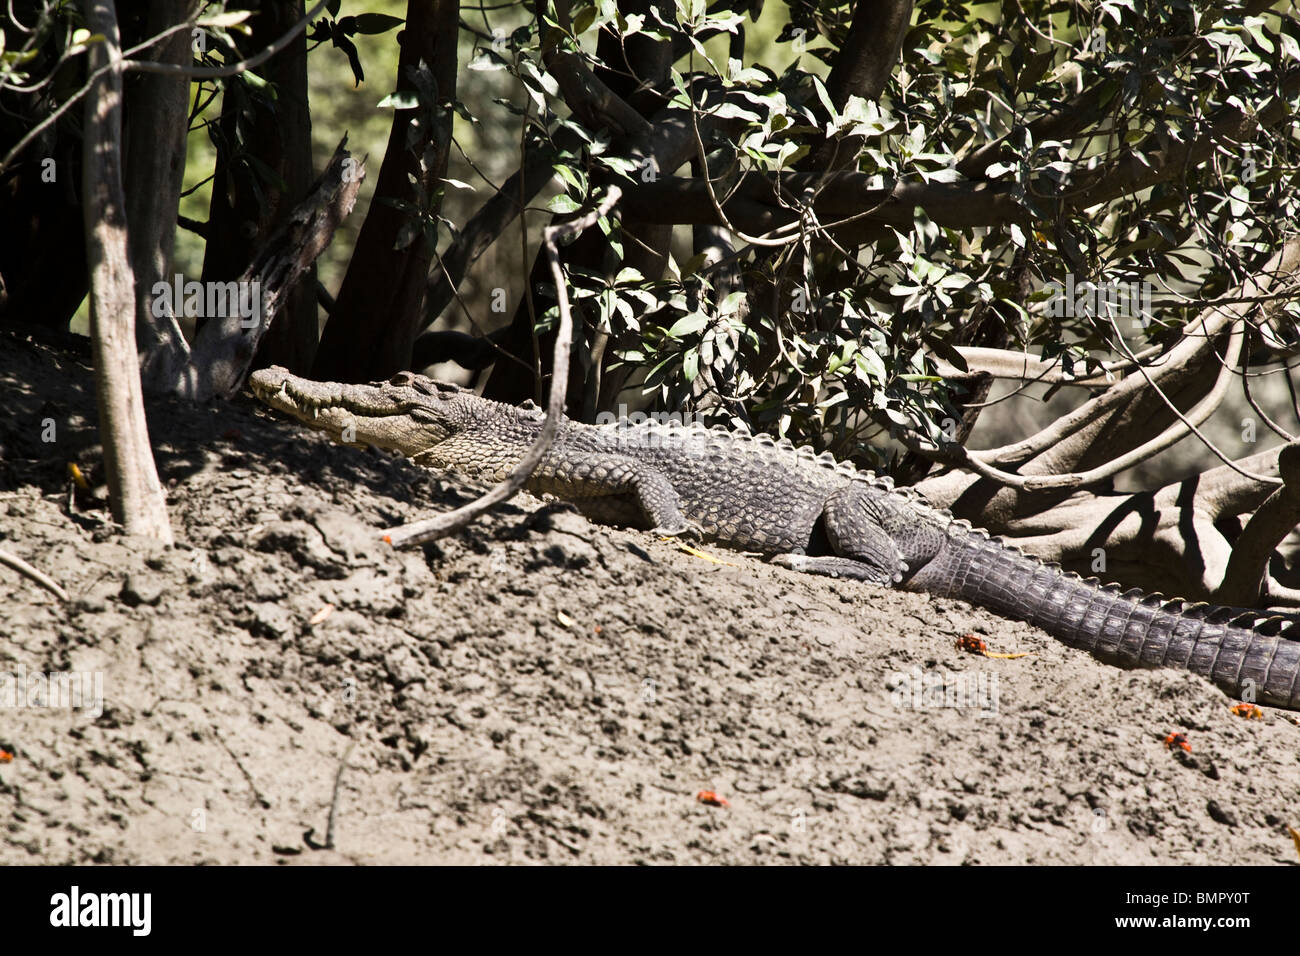 Dieses Salzwasser-Krokodil Crocodylus Porosus wurde während eines Ausflugs Tierwelt-spotting Hunter River Australien beobachtet. Stockfoto